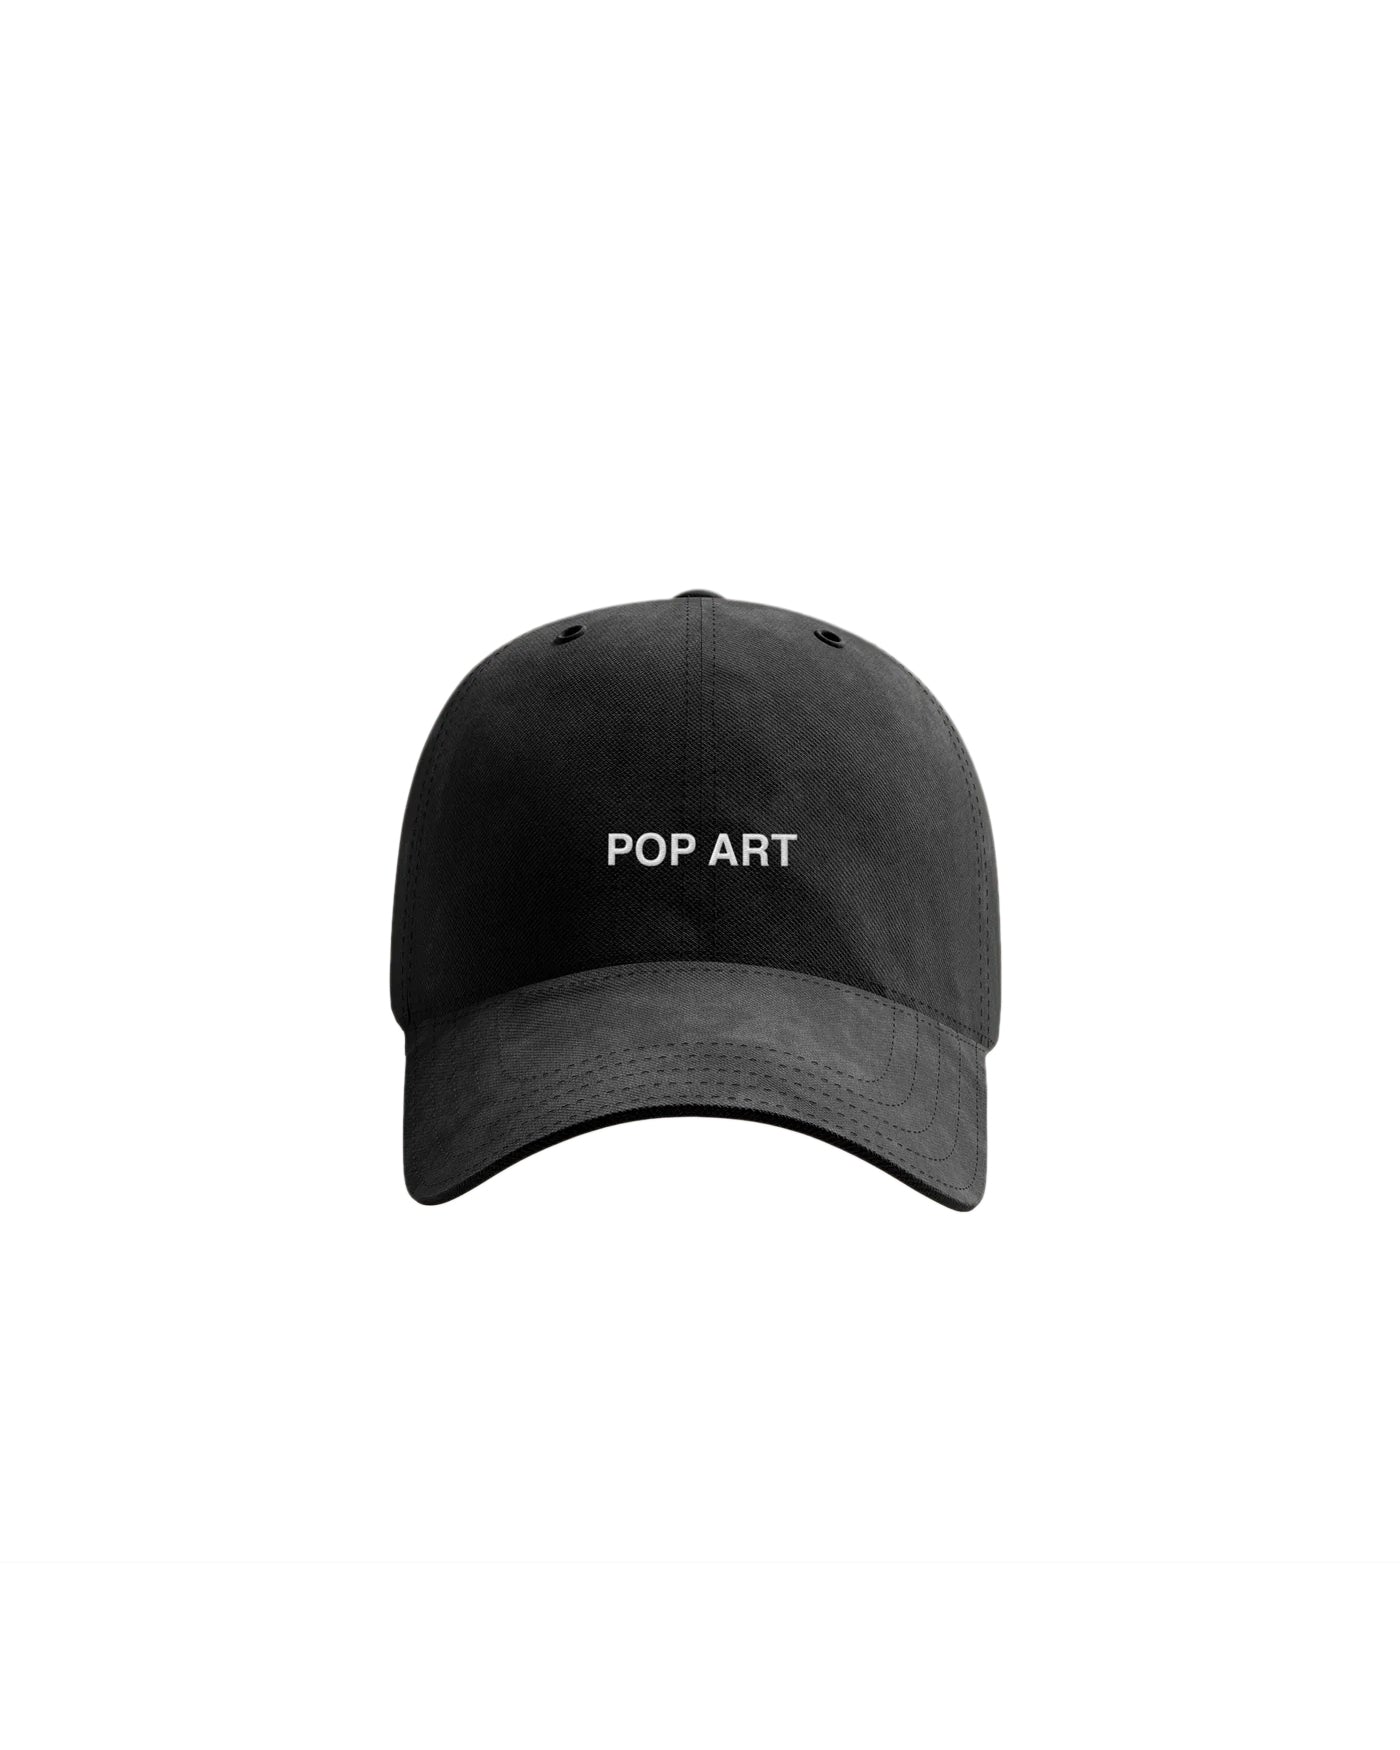 Pop Art Dad Hat